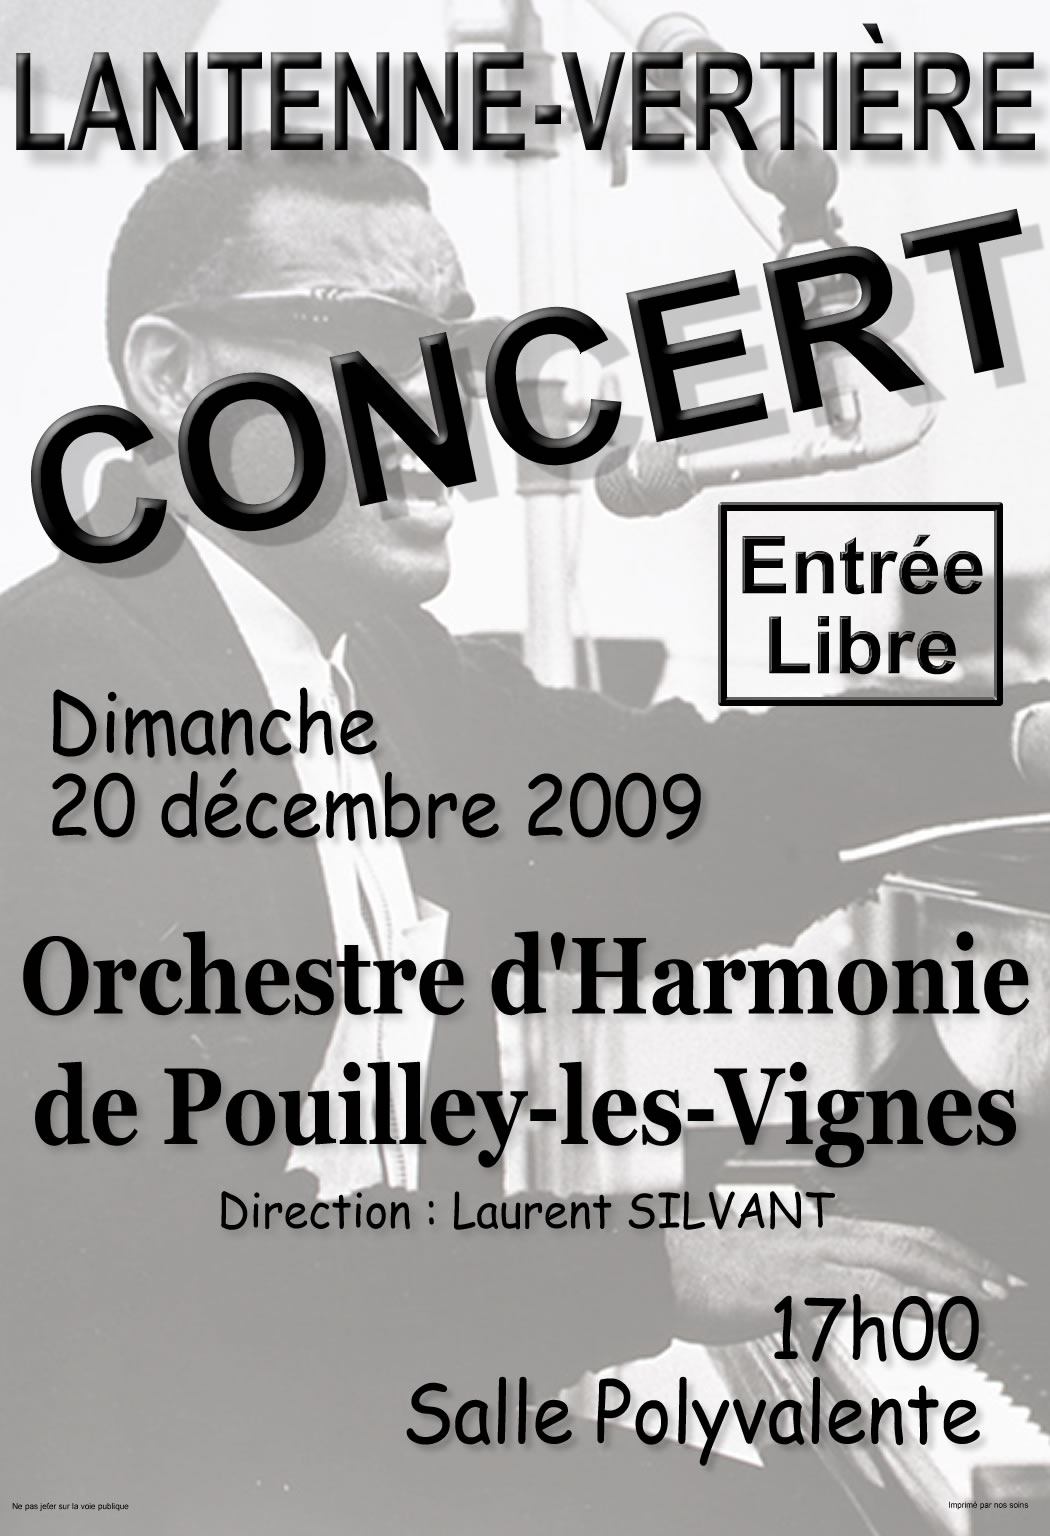 2009 Concert de Noel Lantenne-Vertiere